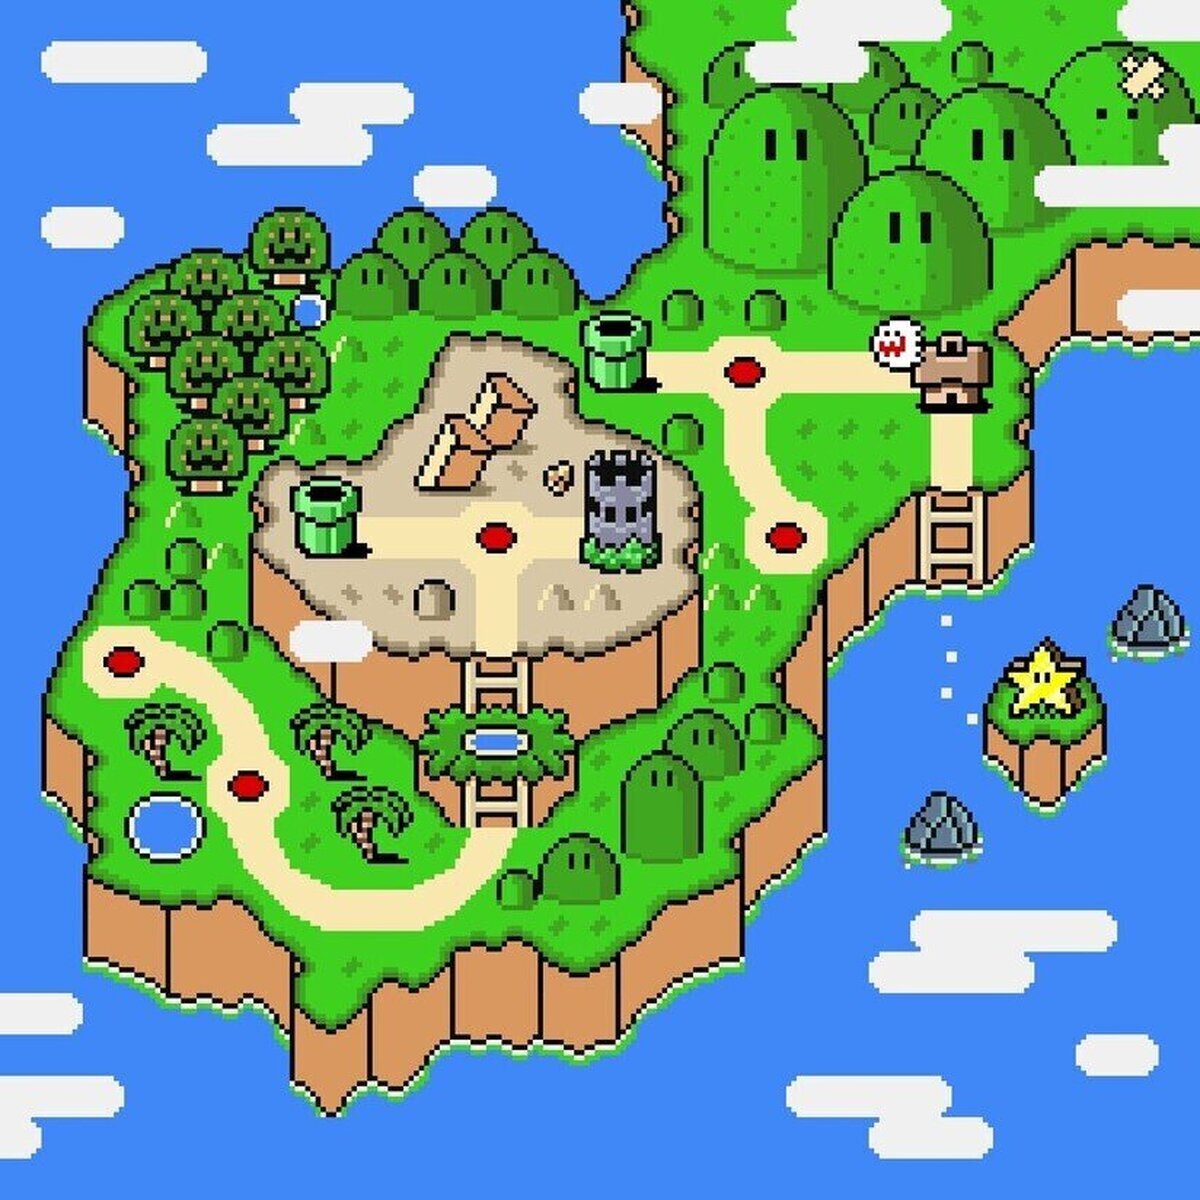 ¿Y vosotros en que parte de la península de Super Mario World vivís? 